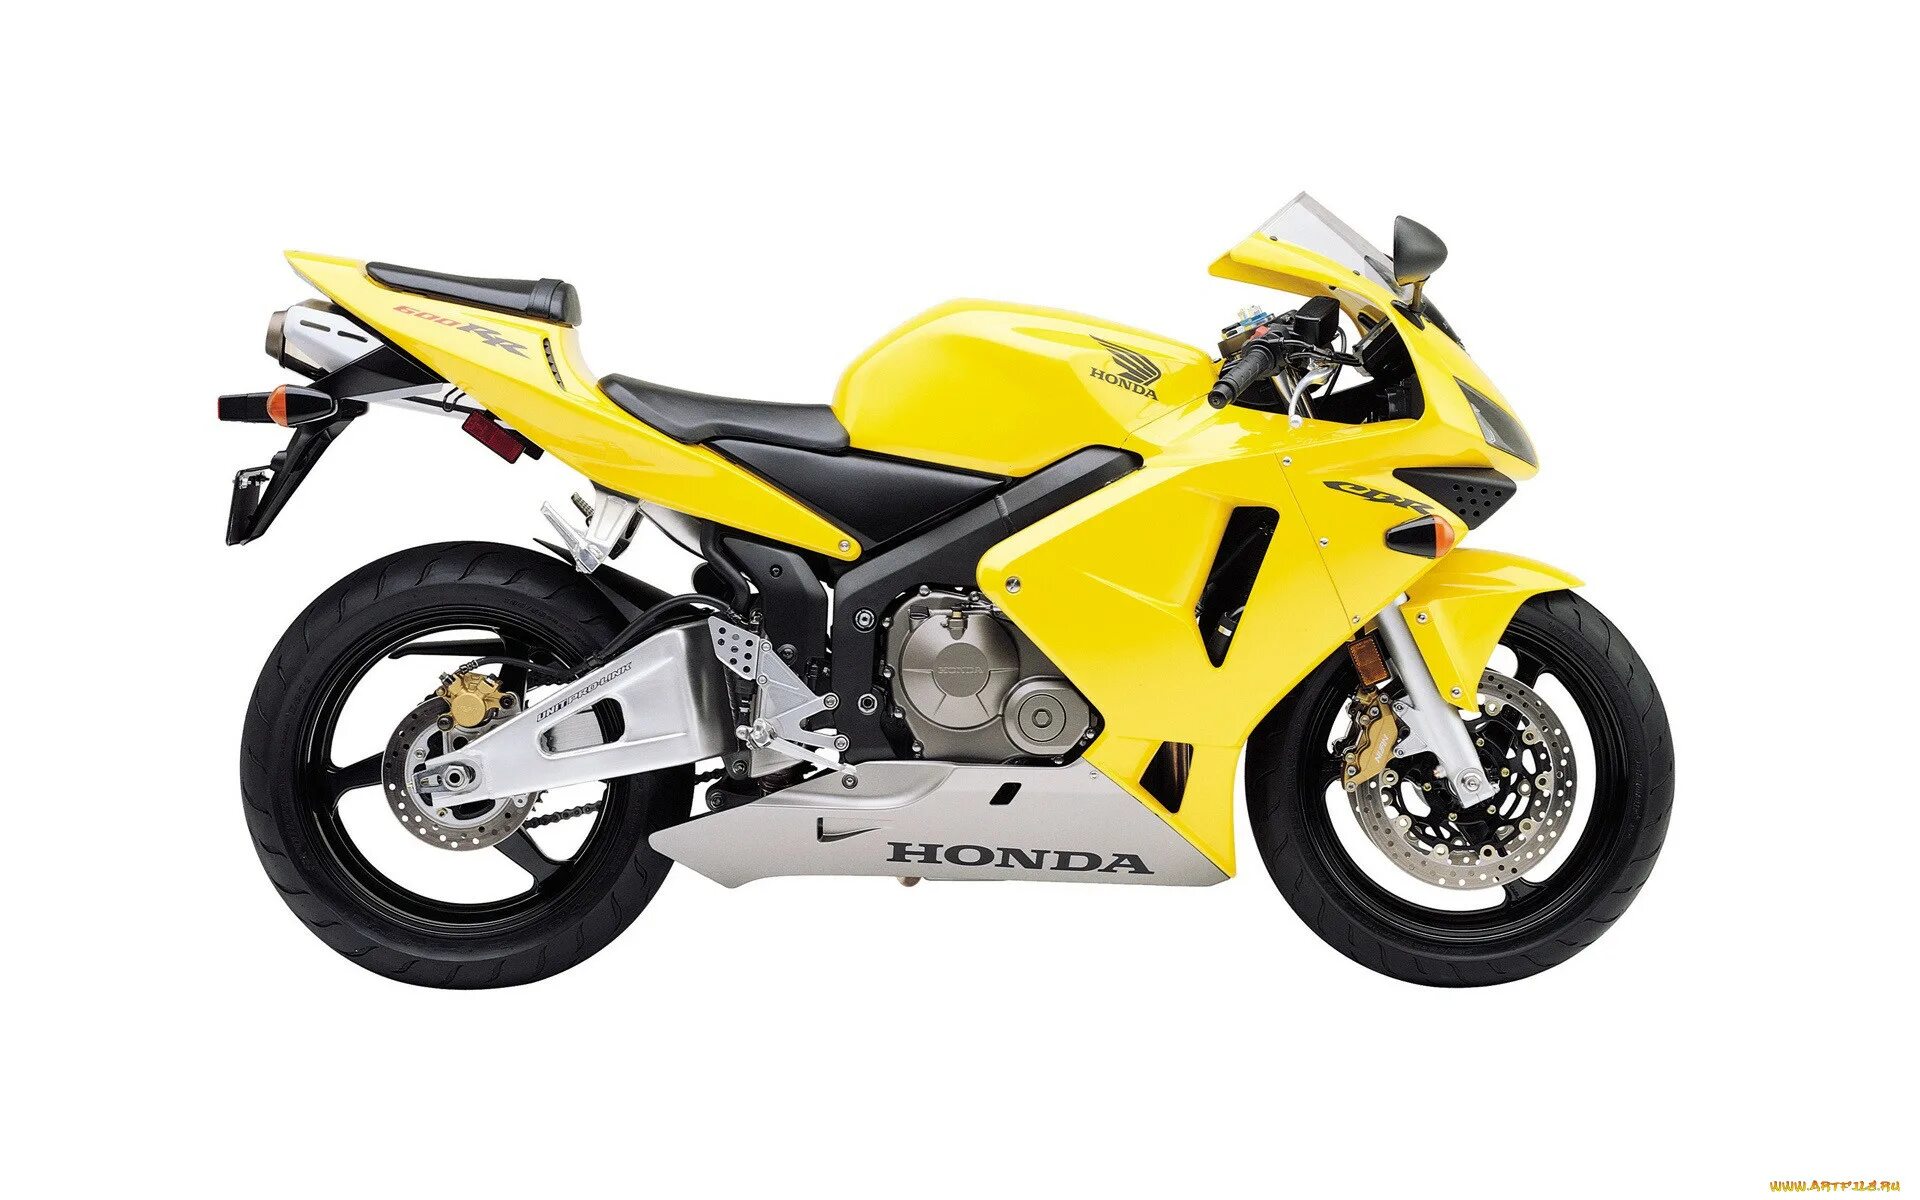 Сток 600. Honda cbr600rr желтый. Мотоцикл Honda CBR 600. Мотоцикл Хонда CBR 600 RR. Honda cbr600rr 2003.